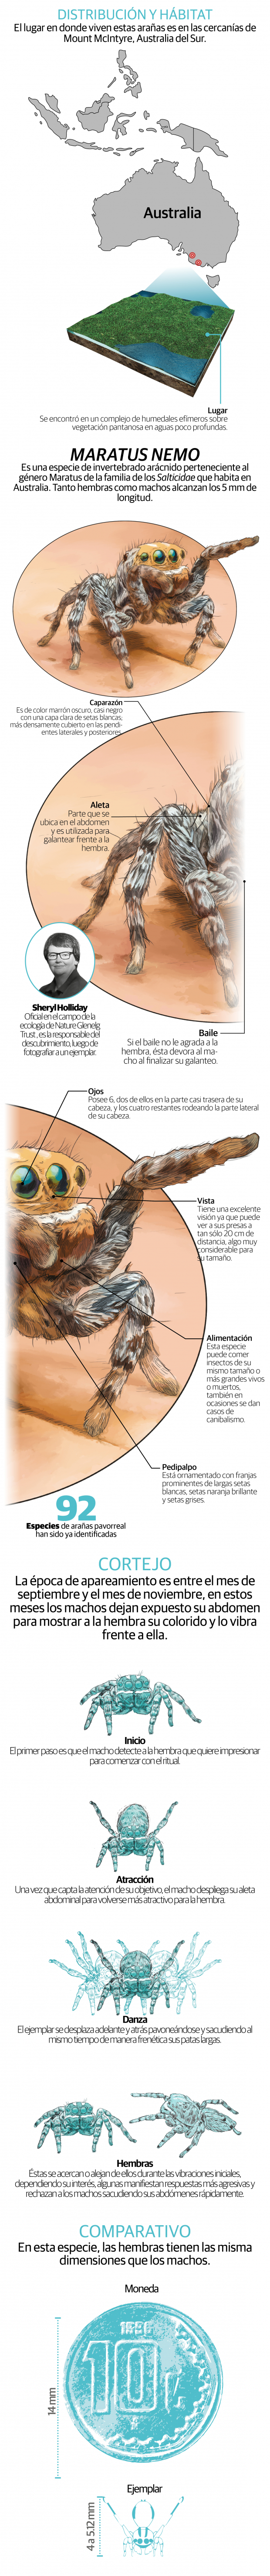 Descubren nueva especie de araña pavorreal en Australia